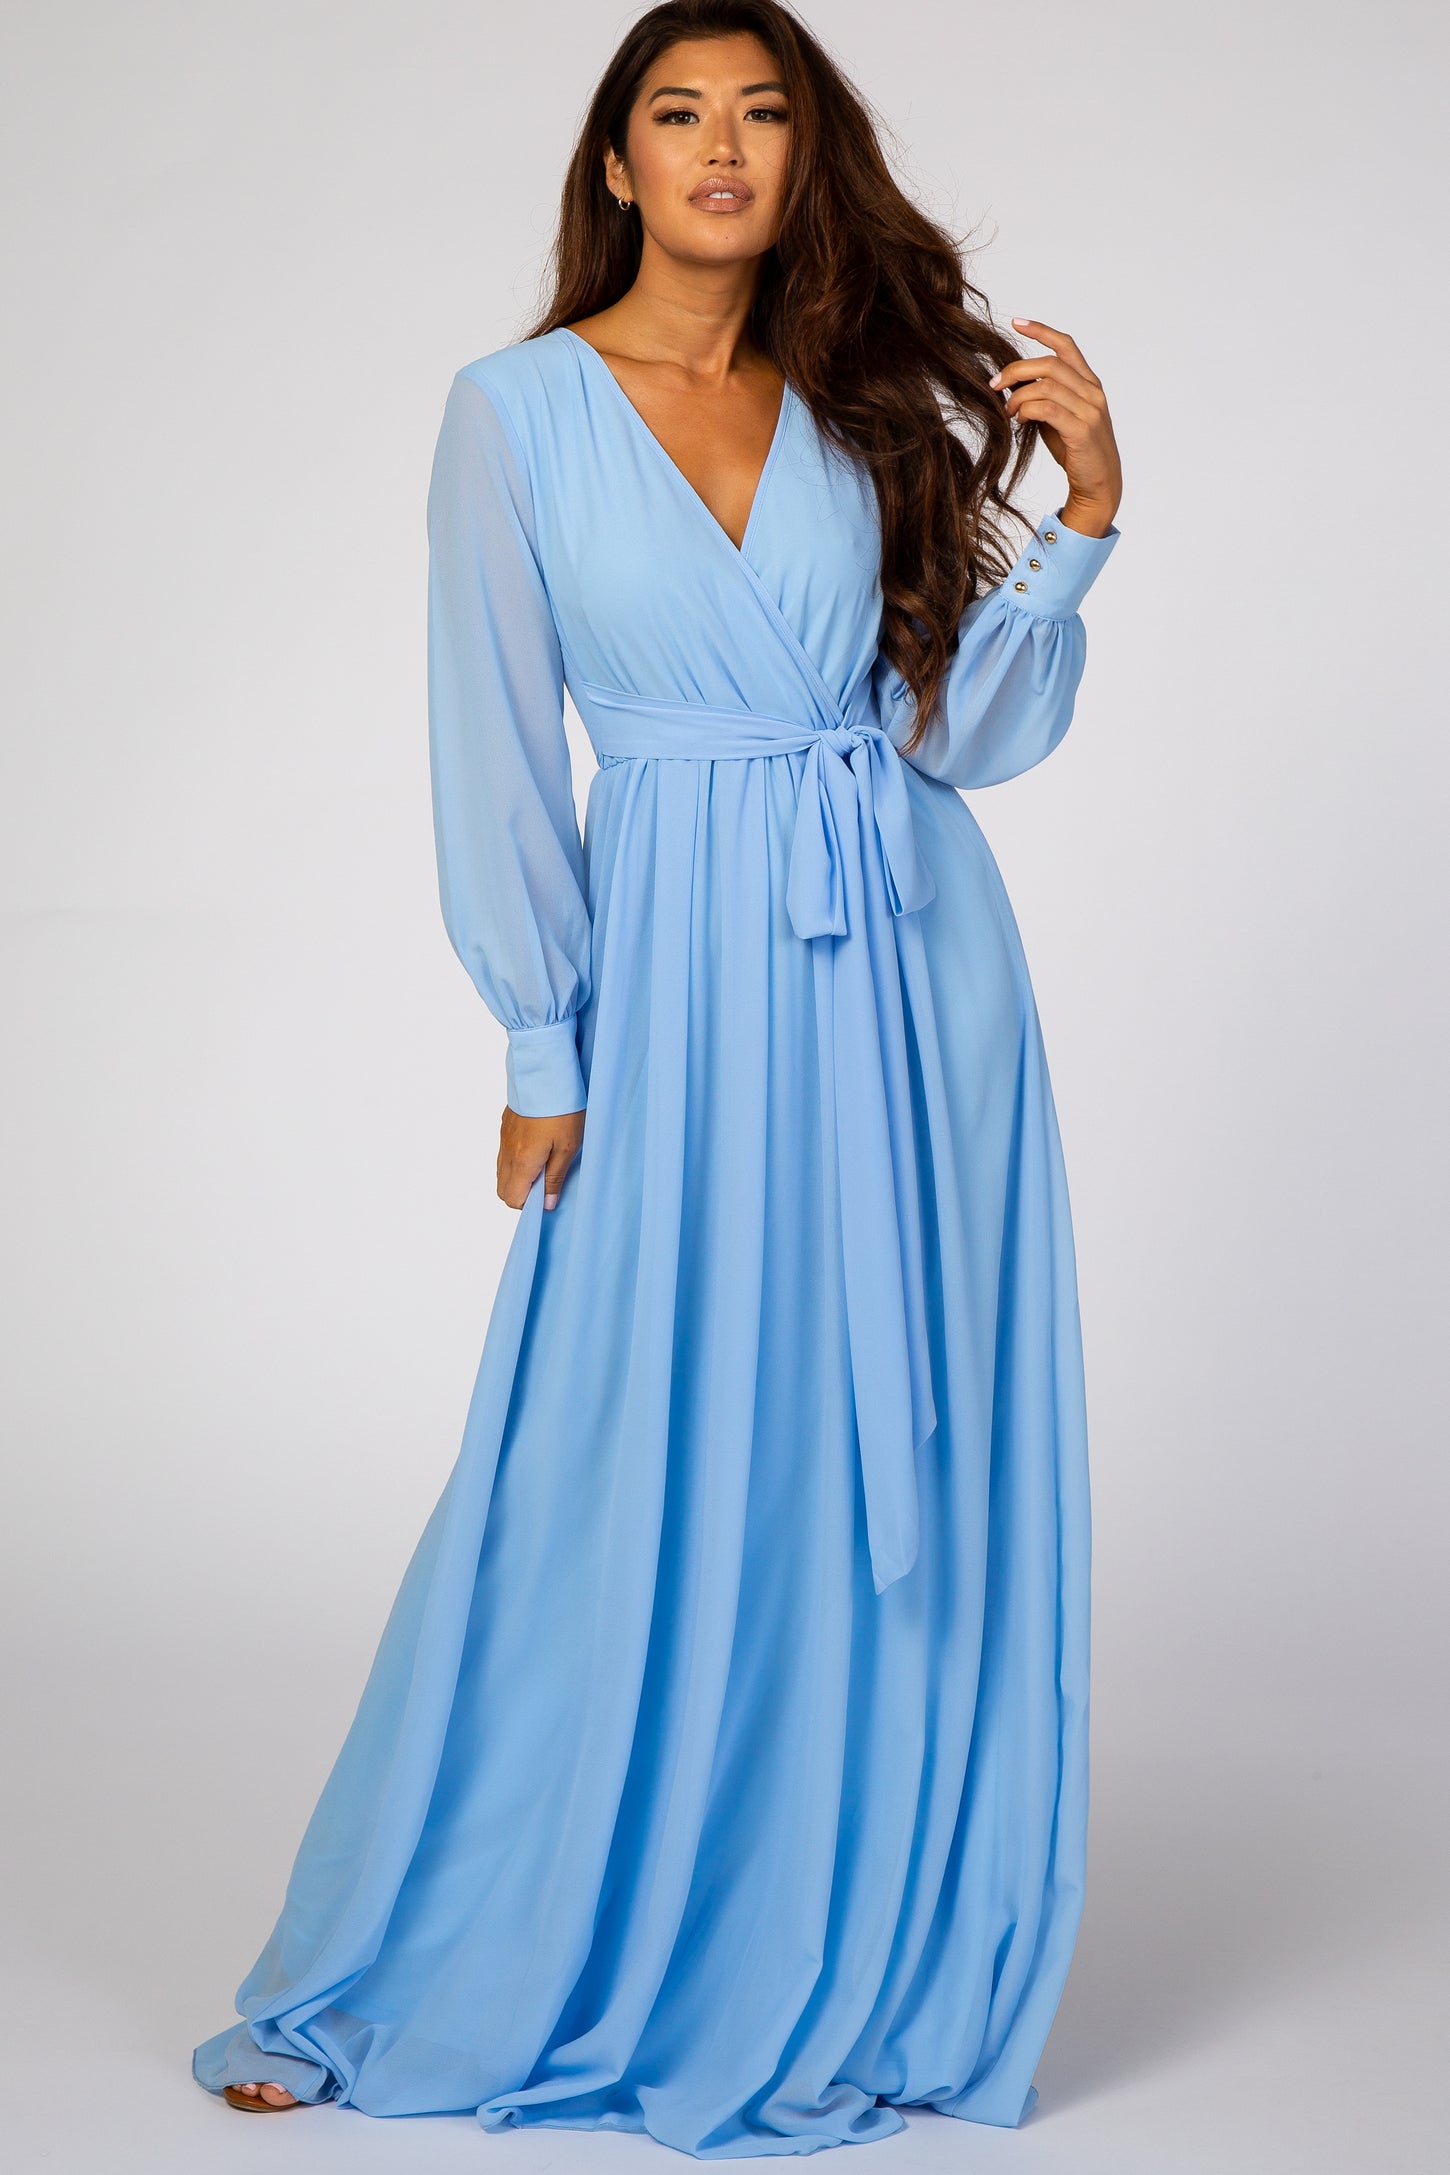 Light Blue Chiffon Long Sleeve Maxi Dress– PinkBlush